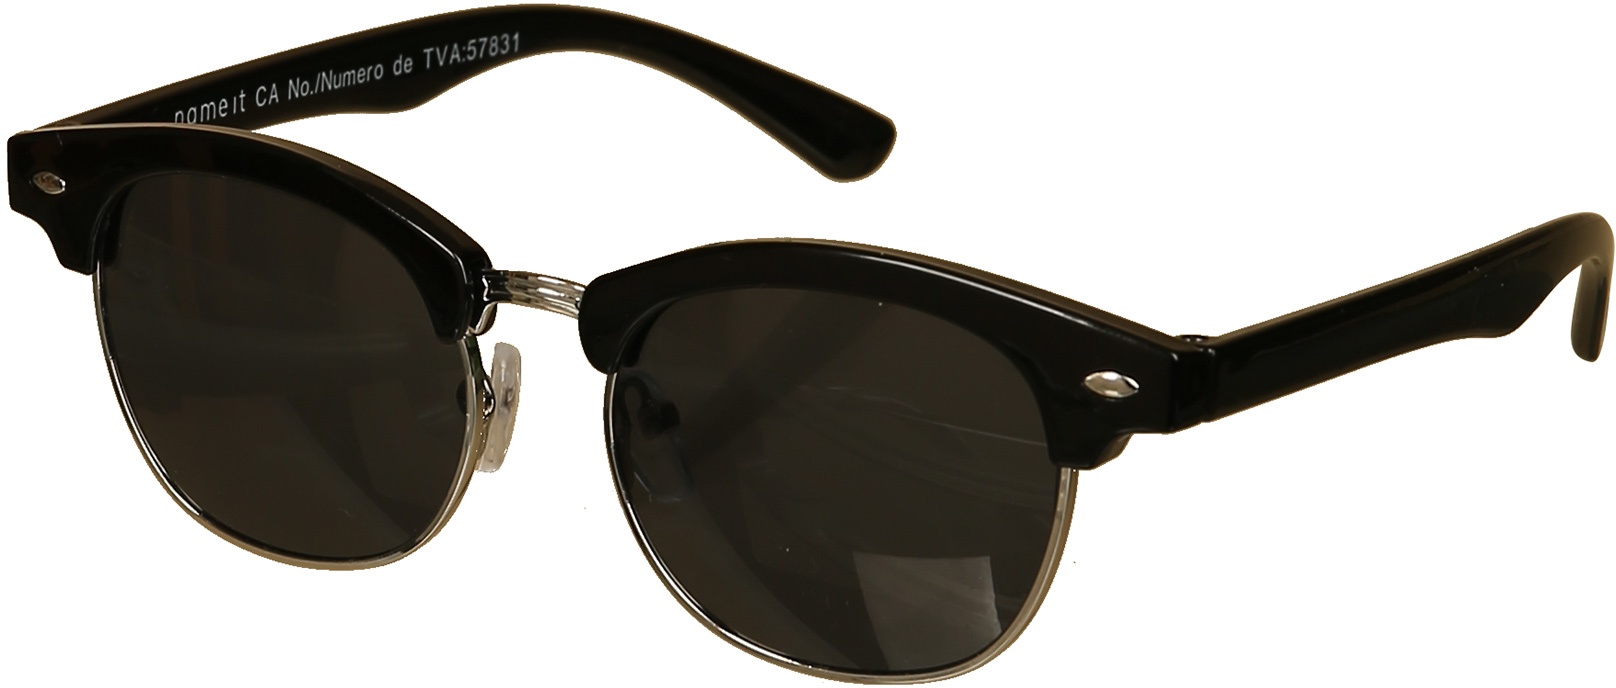 Sonnenbrille Nmmfabiano Sunglasses In Silver Colour